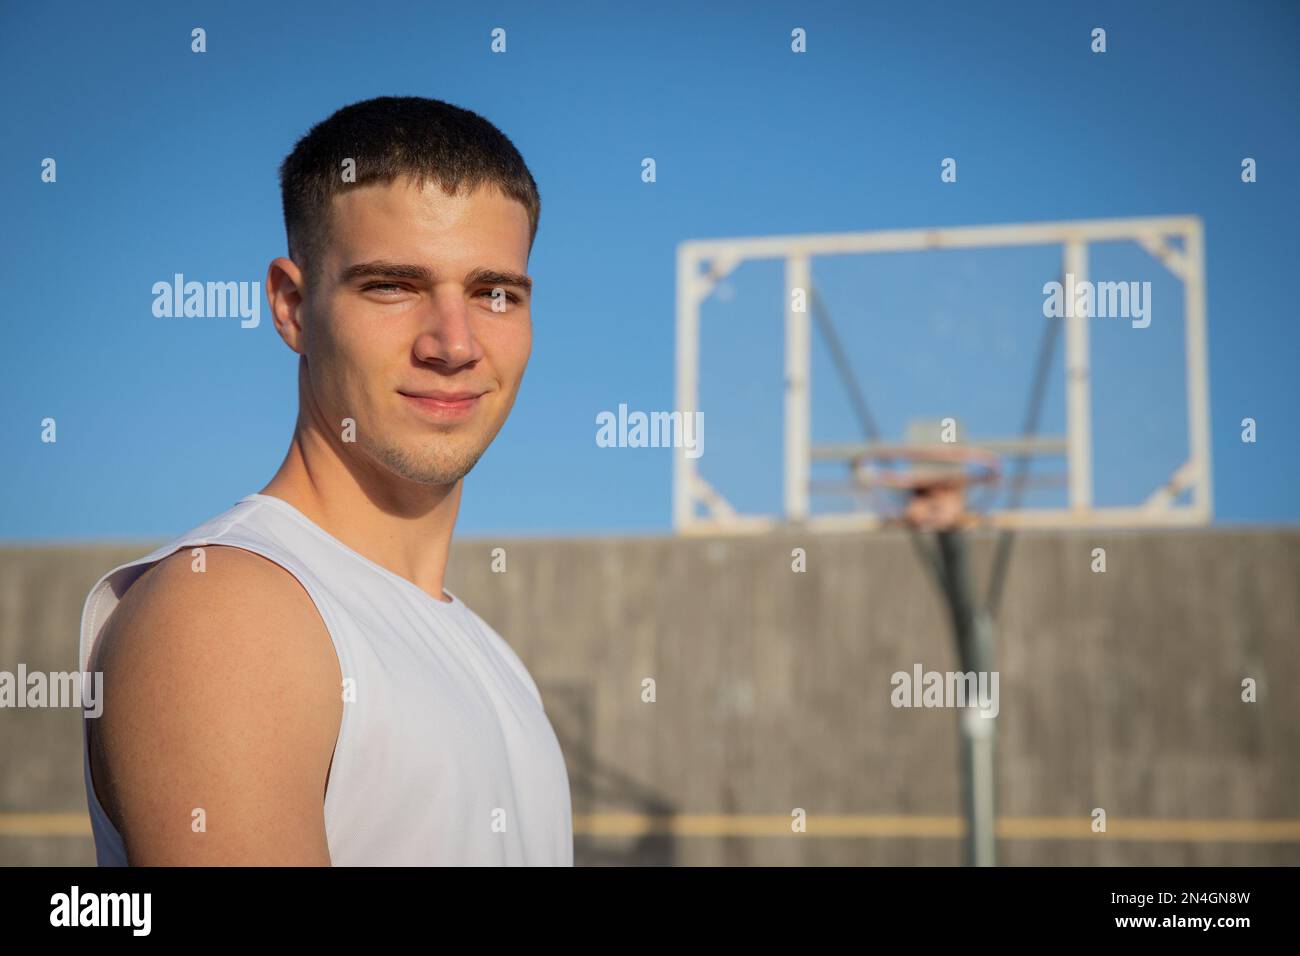 Un joueur de basket-ball souriant sur un terrain de basket-ball avec un panier derrière lui. Banque D'Images